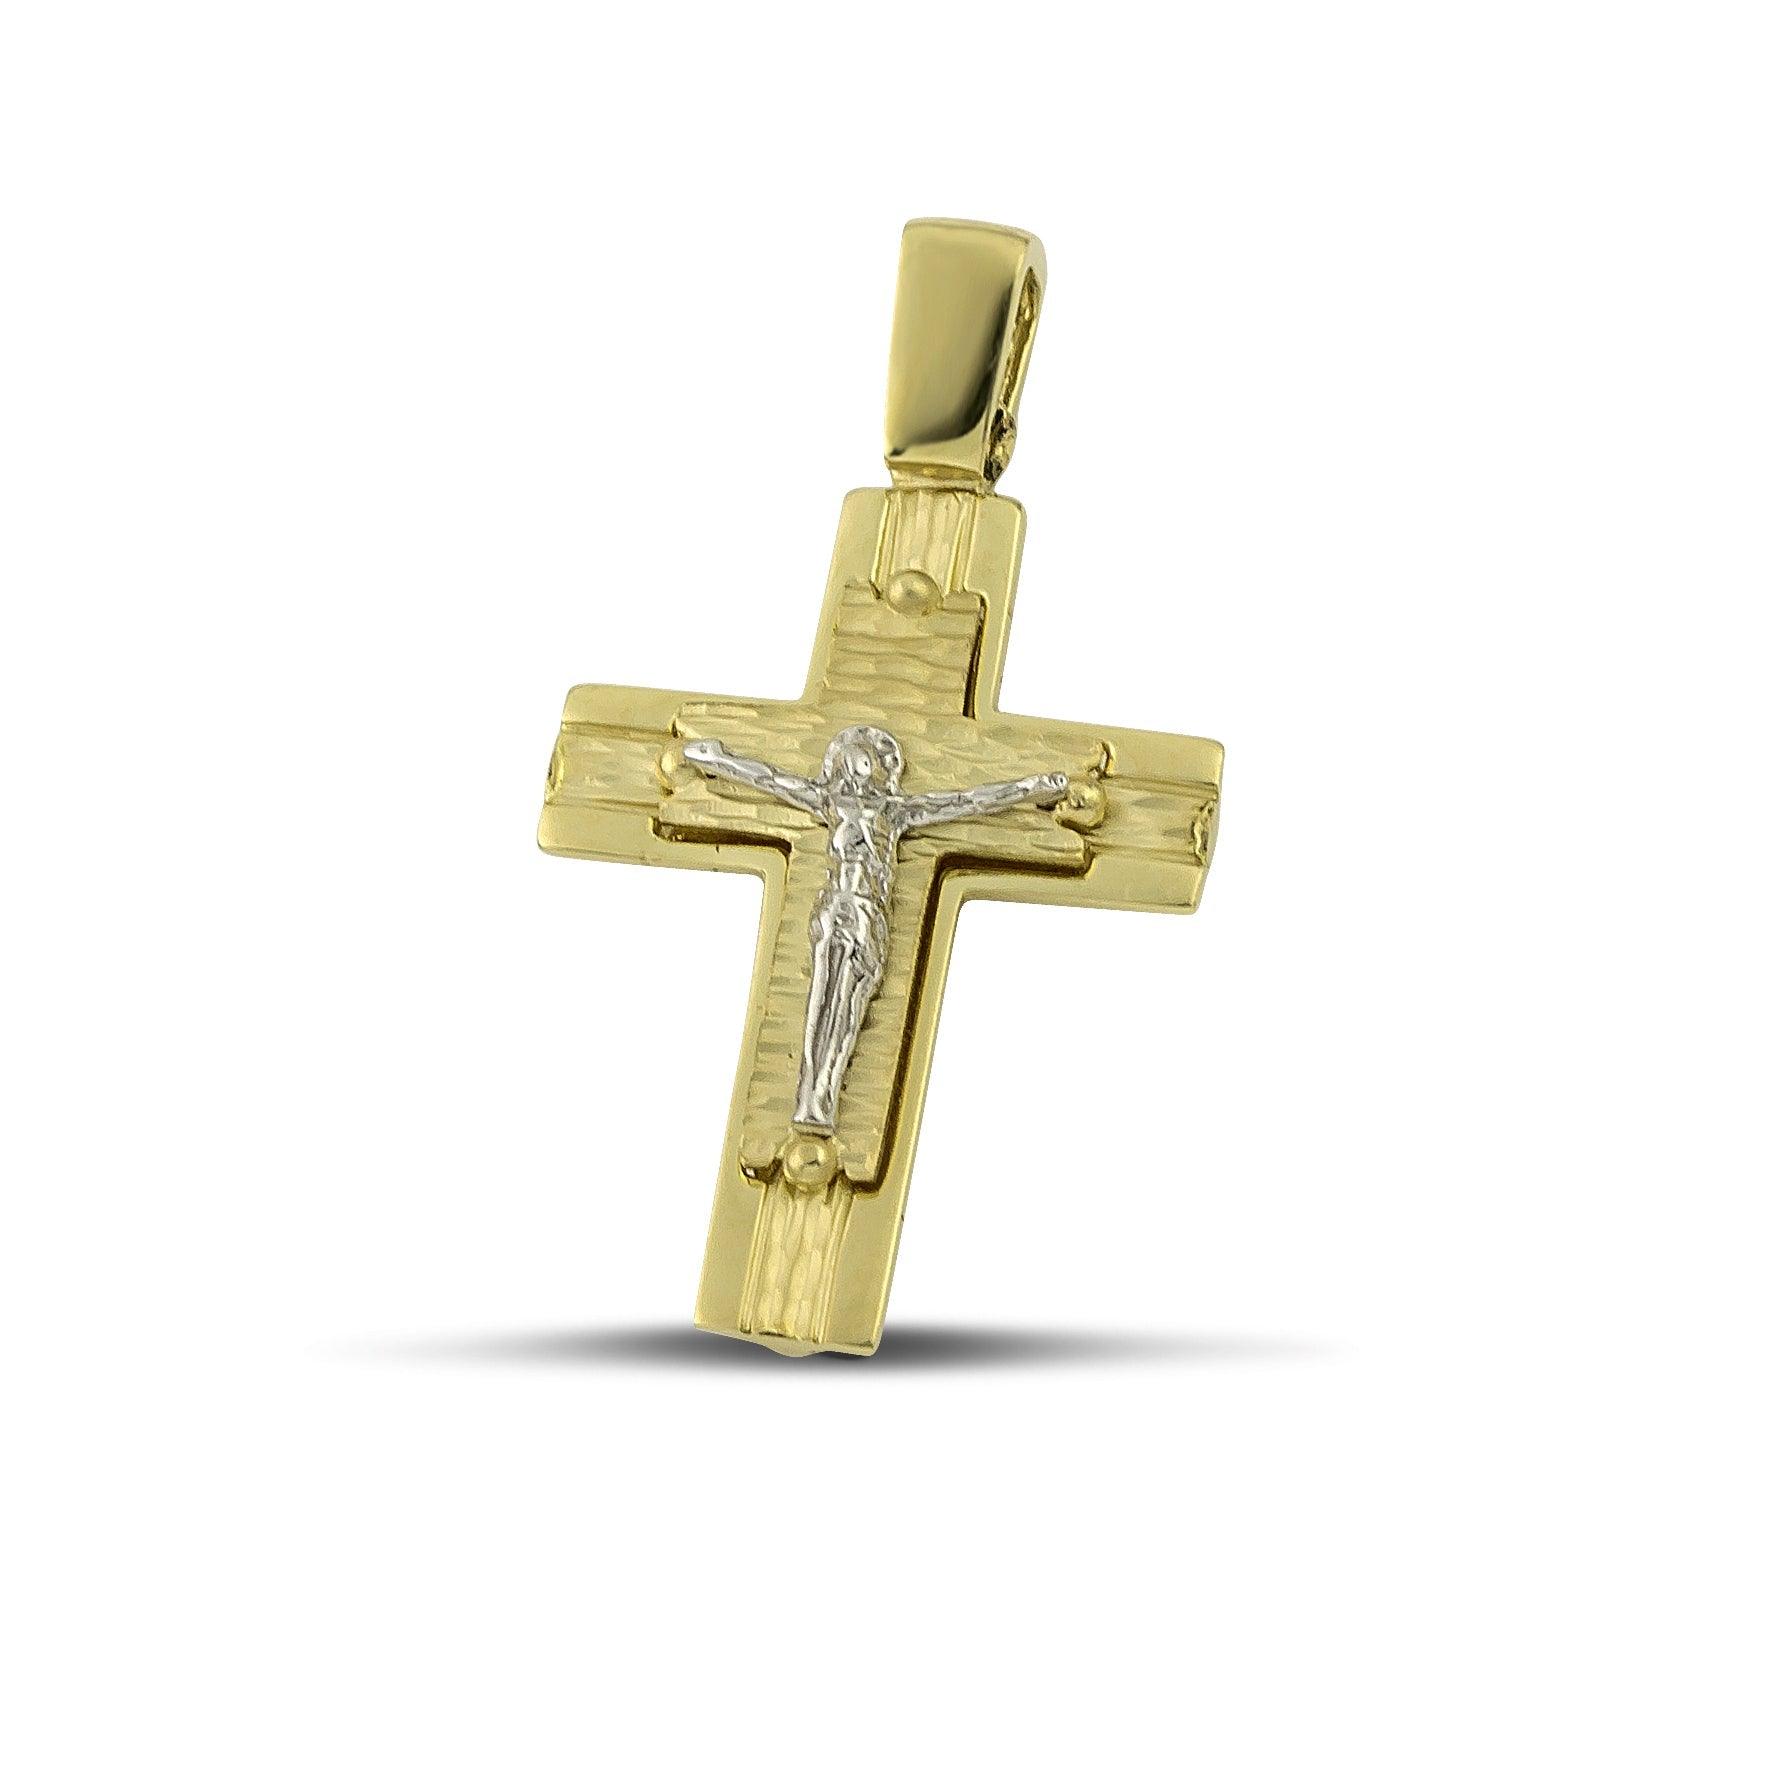 Ανδρικός βαπτιστικός σταυρός από χρυσό Κ14 με τον Εσταυρωμένο.